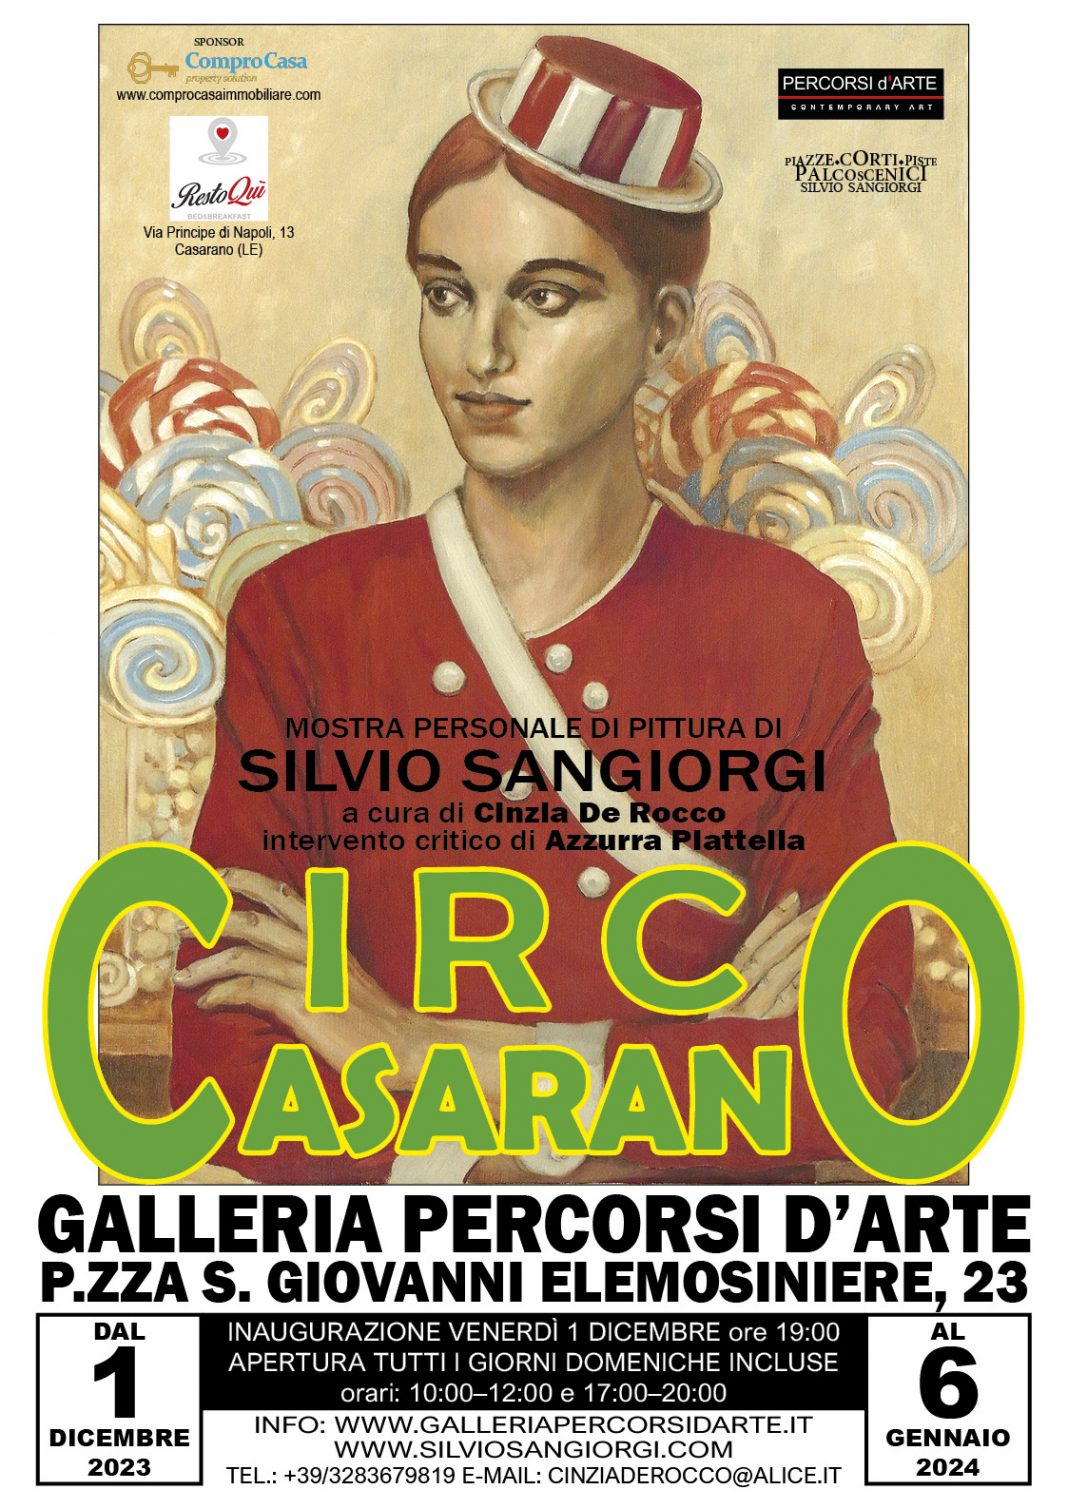 Silvio Sangiorgi – Circo Casaranohttps://www.exibart.com/repository/media/formidable/11/img/ec6/Locandina_Mostra_Casarano_2023_SS1-1068x1509.jpg